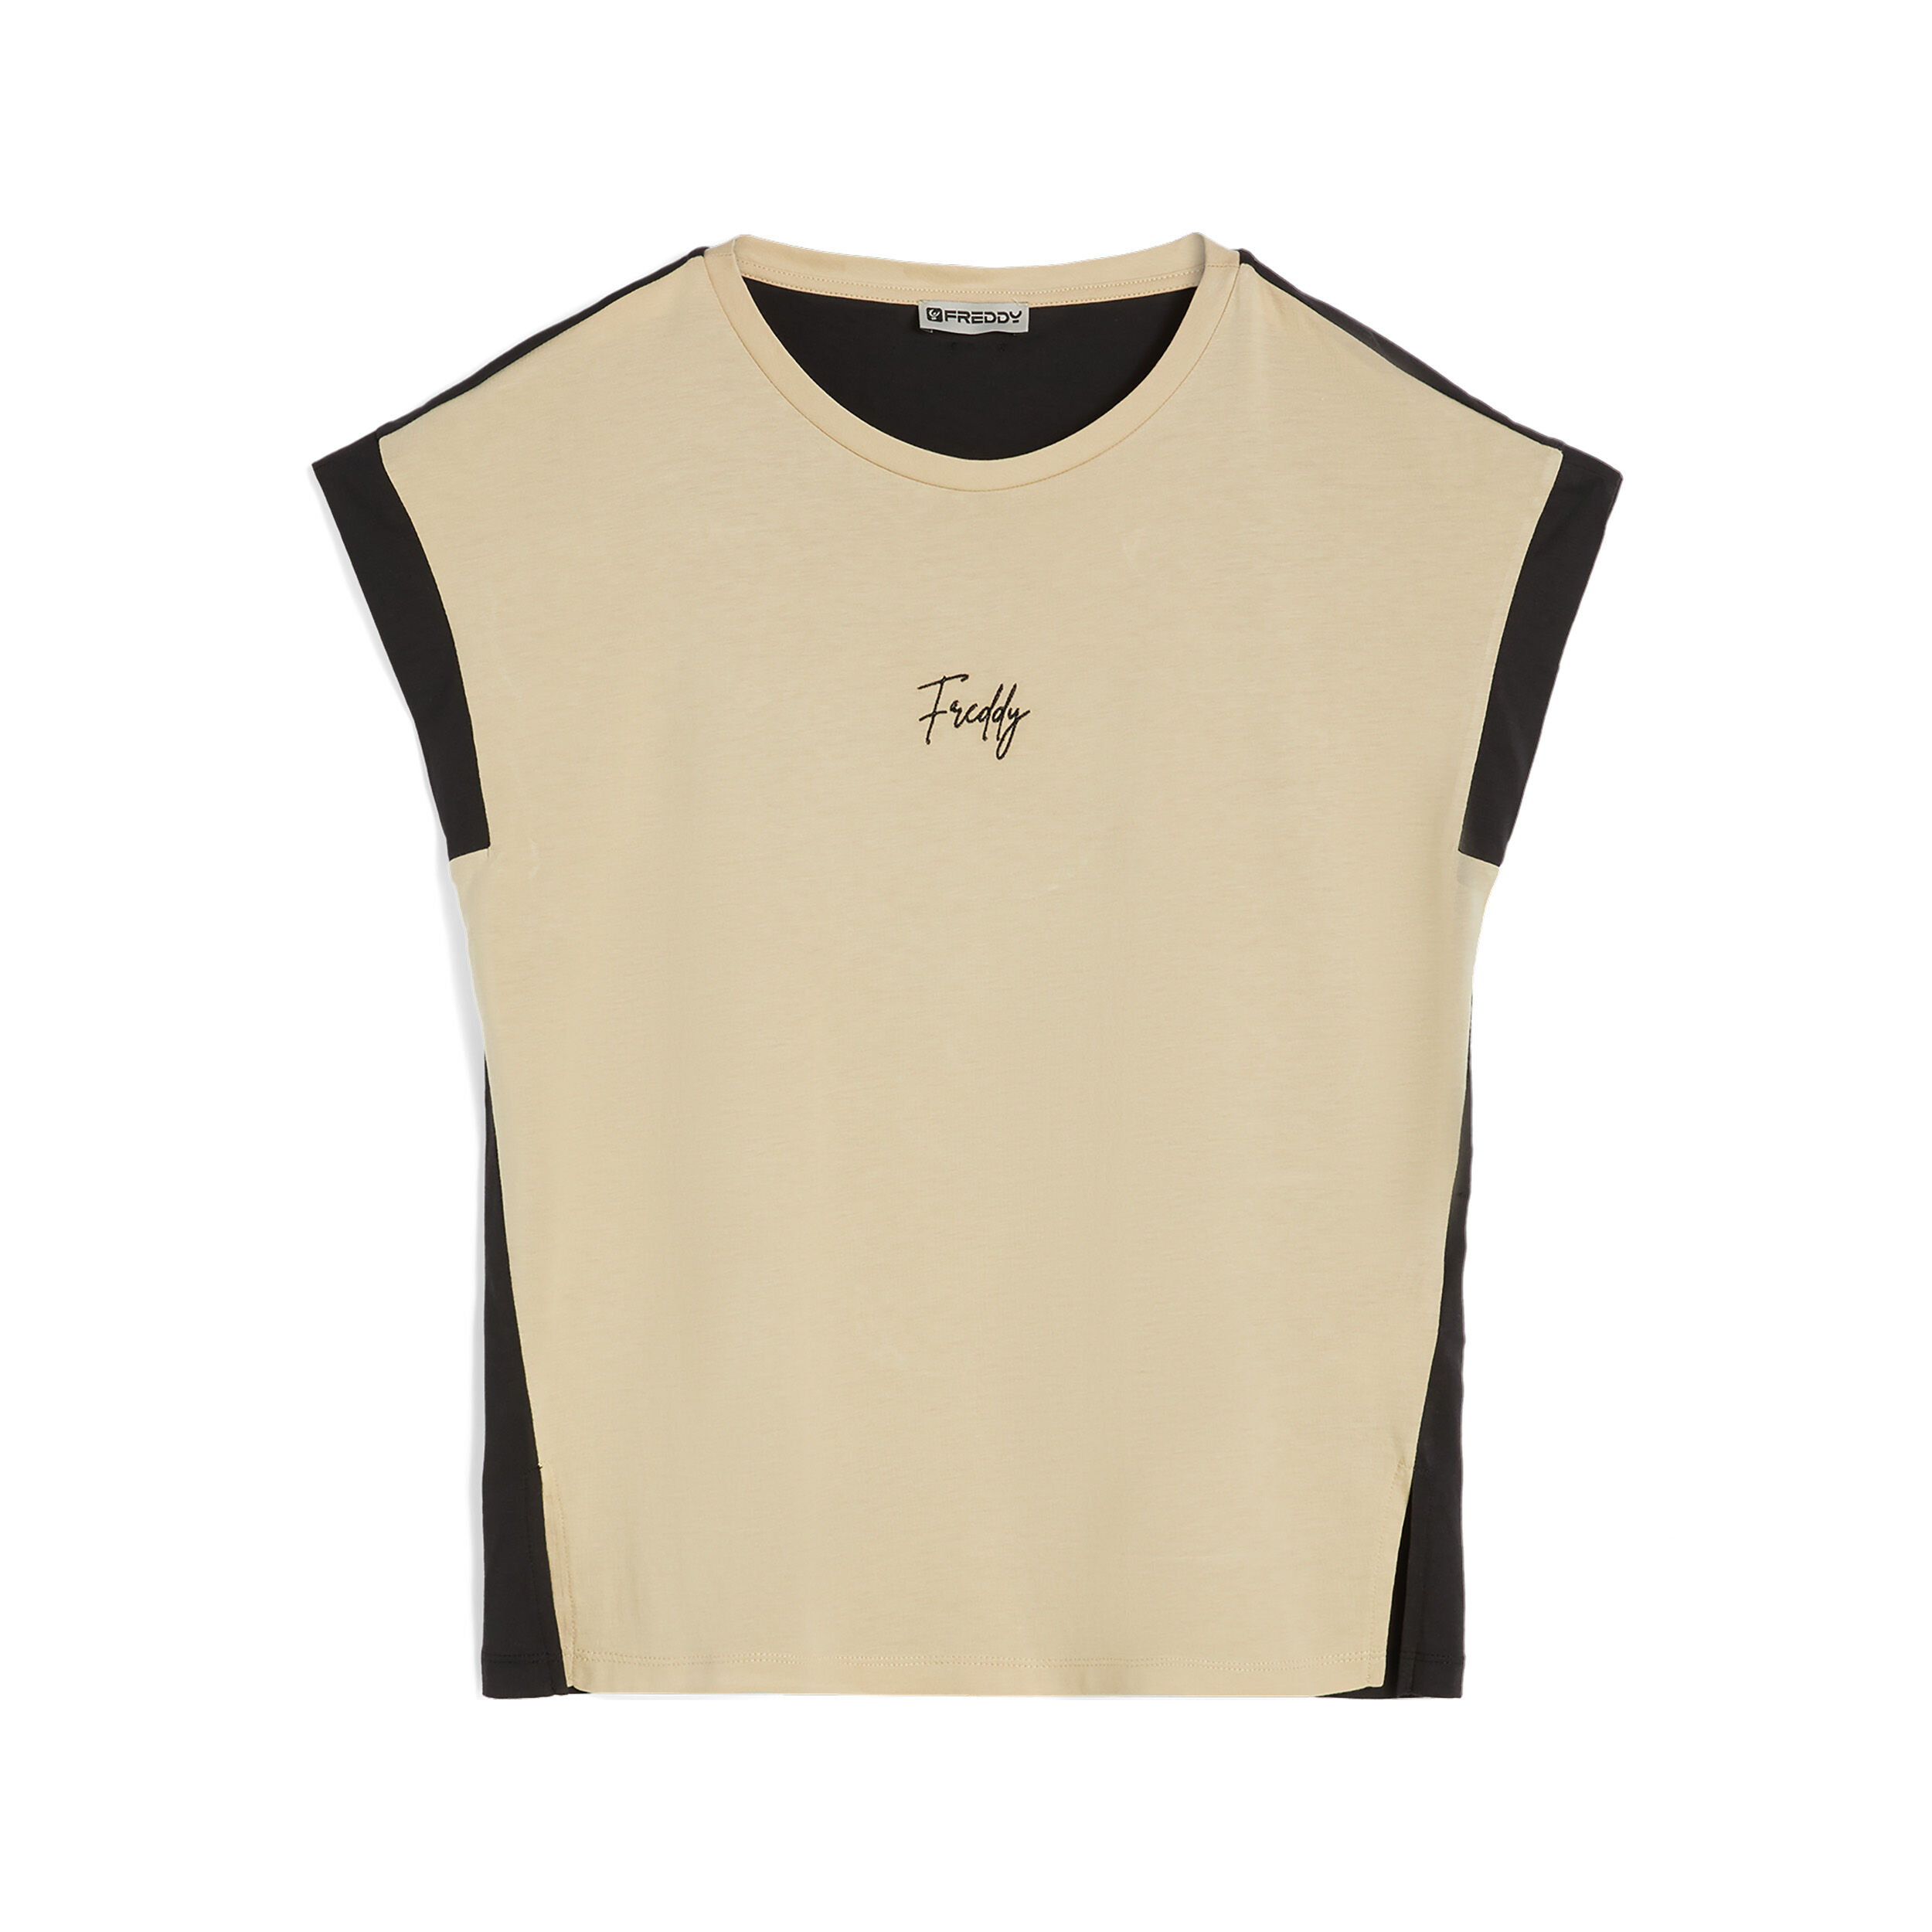 Freddy T-shirt da donna senza maniche in jersey modal bicolore Check Beige -Black Donna Extra Large